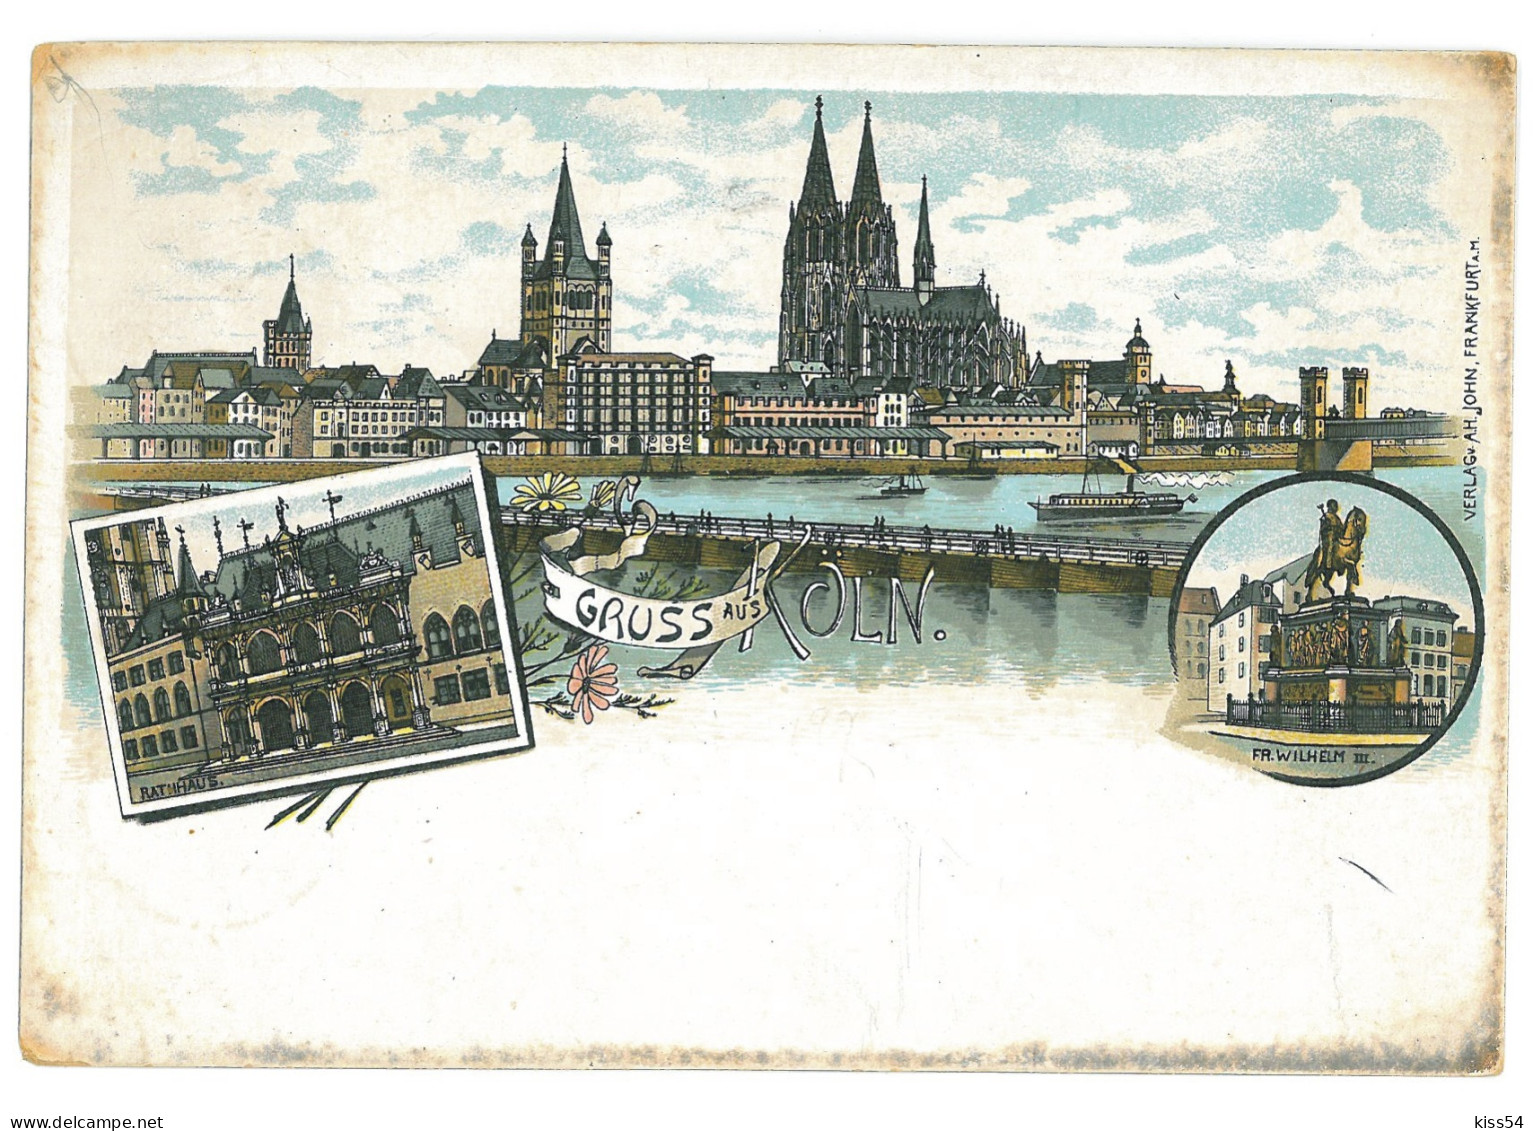 GER 20 - 16973 KOLN, Litho, Germany - Old Postcard - Used - 1898 - Köln